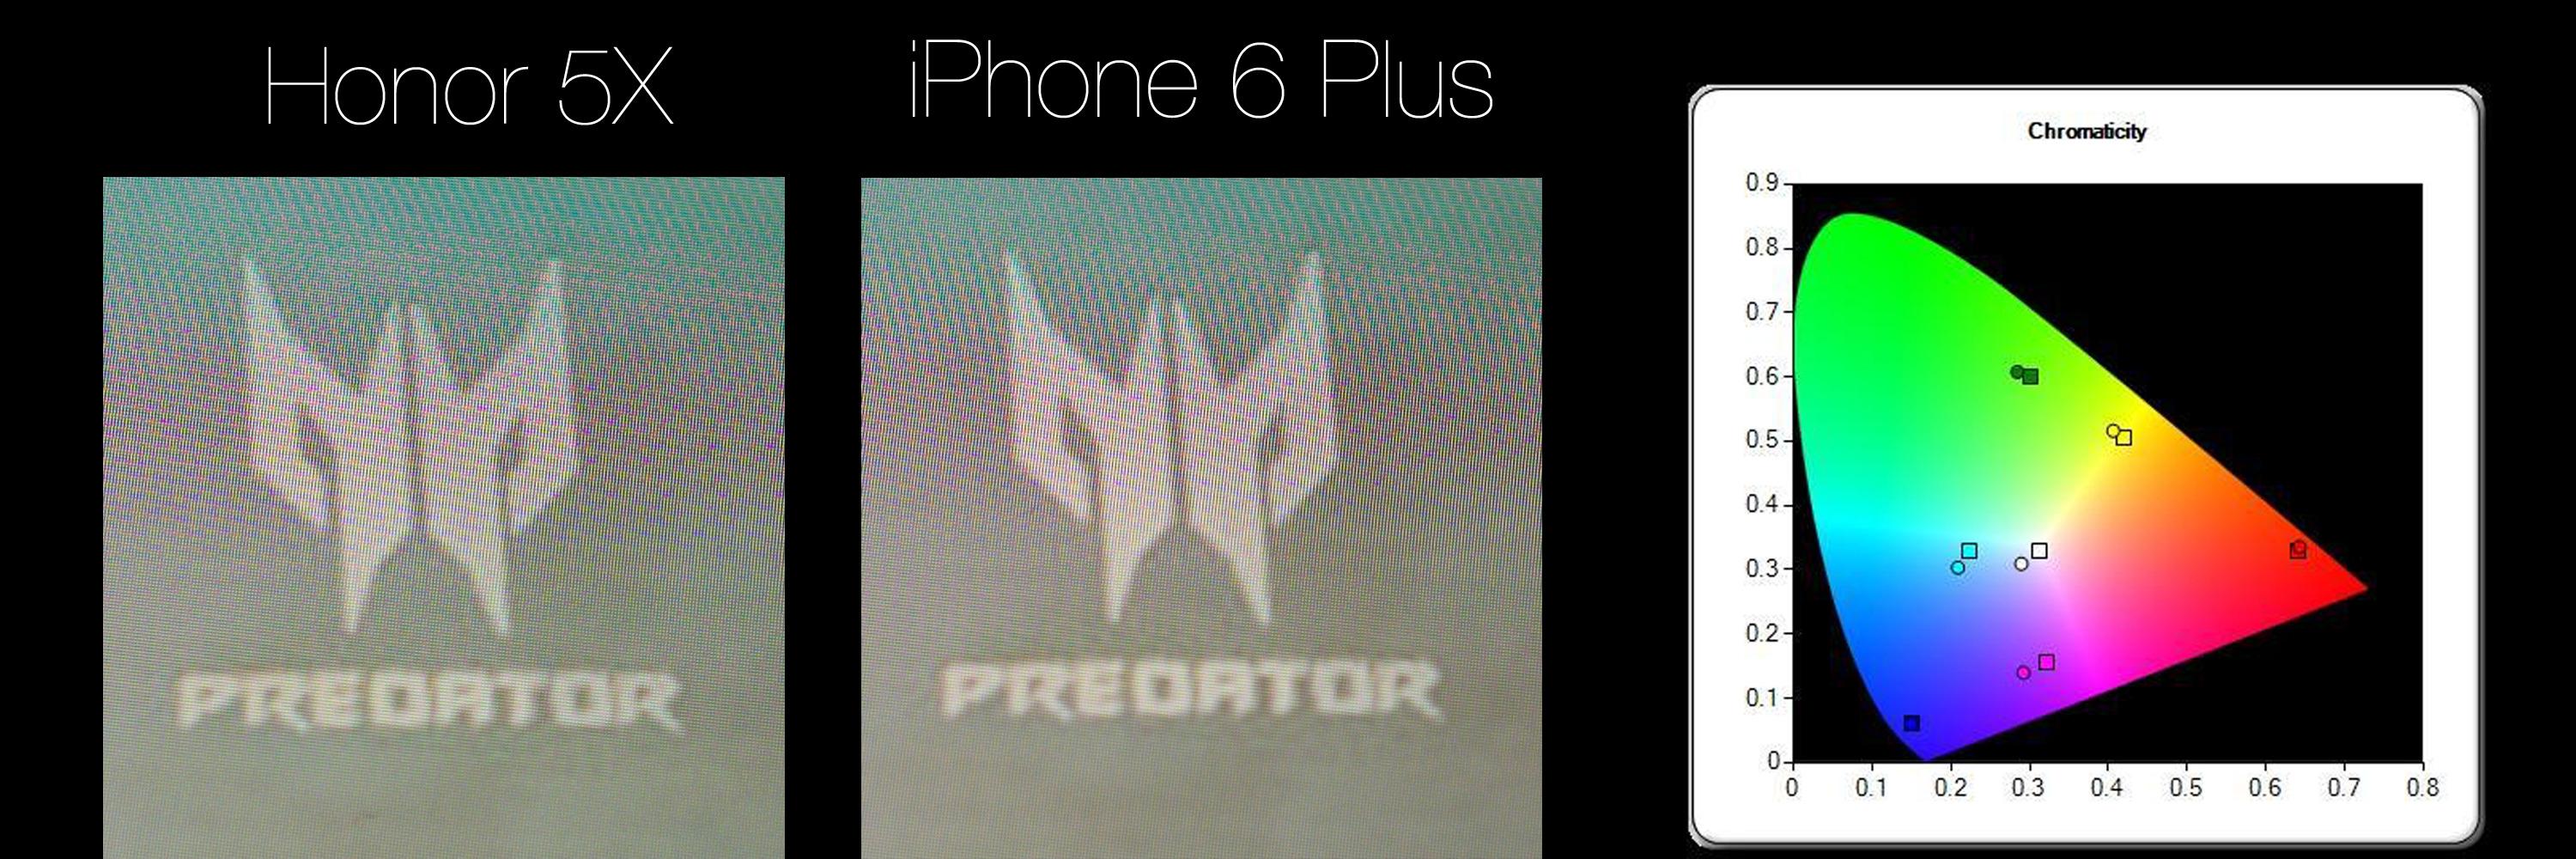 iPhone 6 Plus har samme skjermstørrelse og oppløsning som Honor 5X. Til høyre ser du fargespekteret til Honor-skjermen.